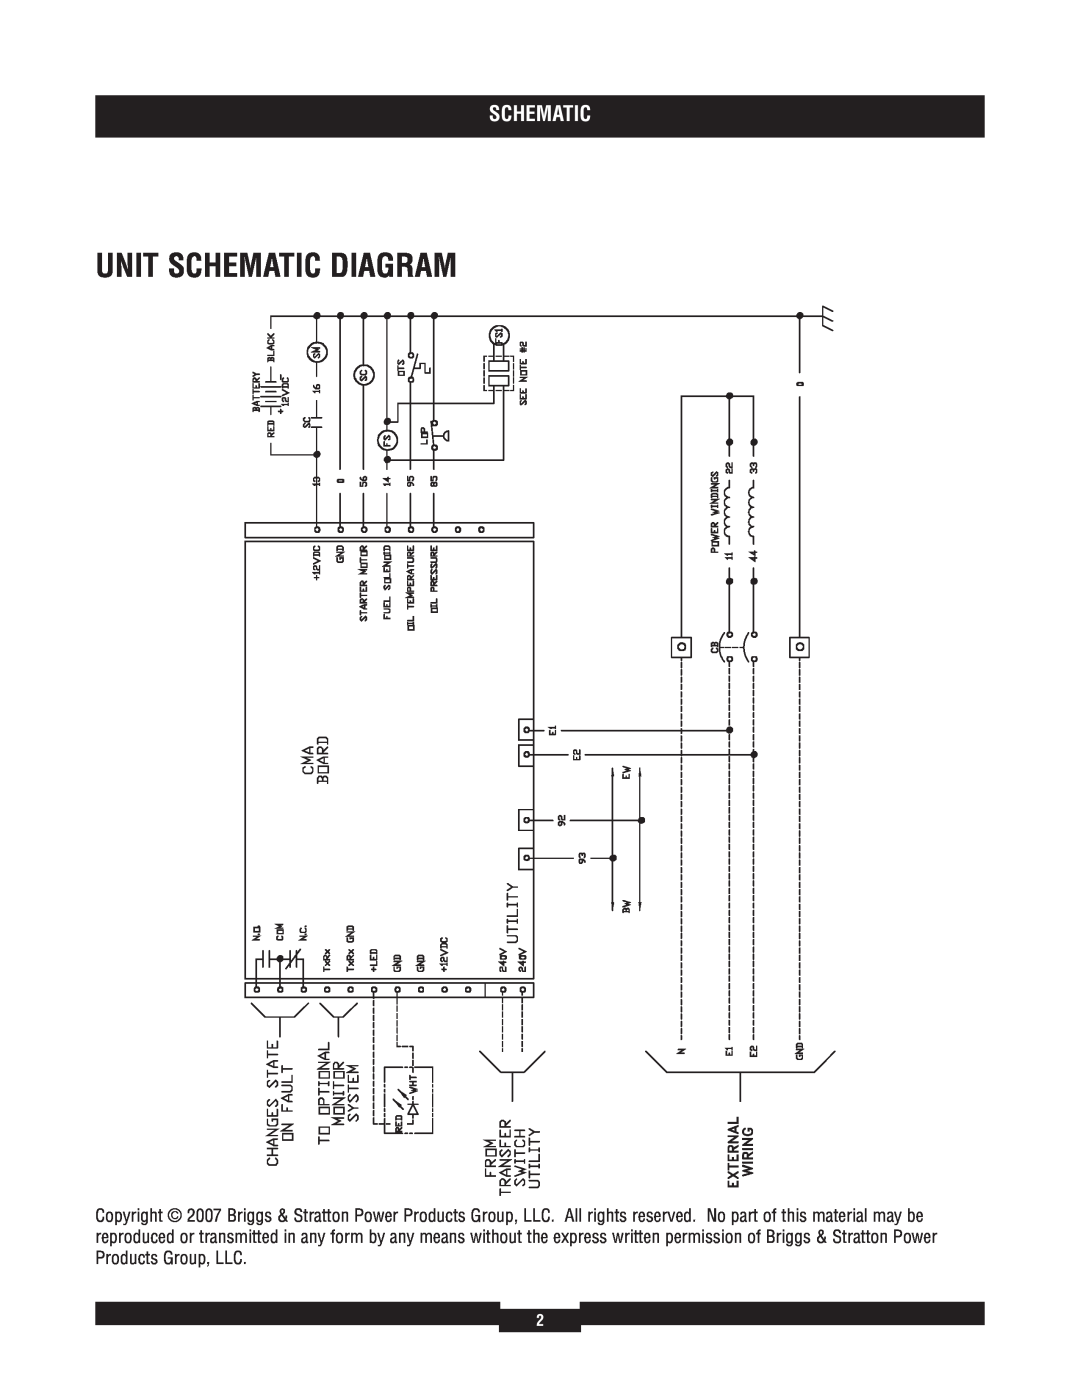 Briggs & Stratton 040212-1 manual Unit Schematic Diagram 